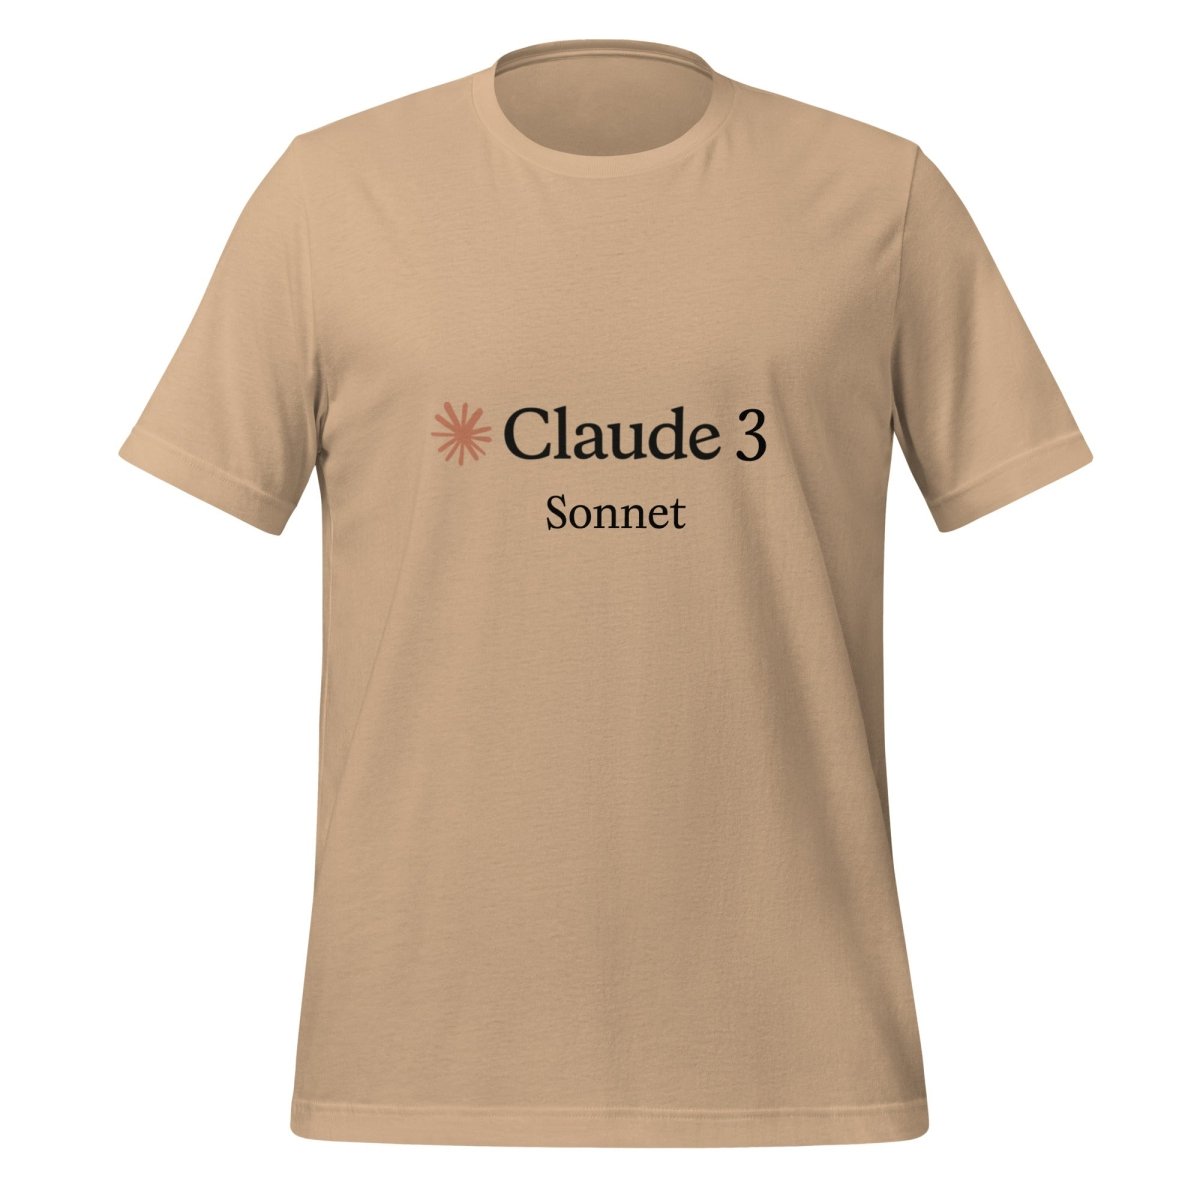 Claude 3 Sonnet T - Shirt (unisex) - Tan - AI Store